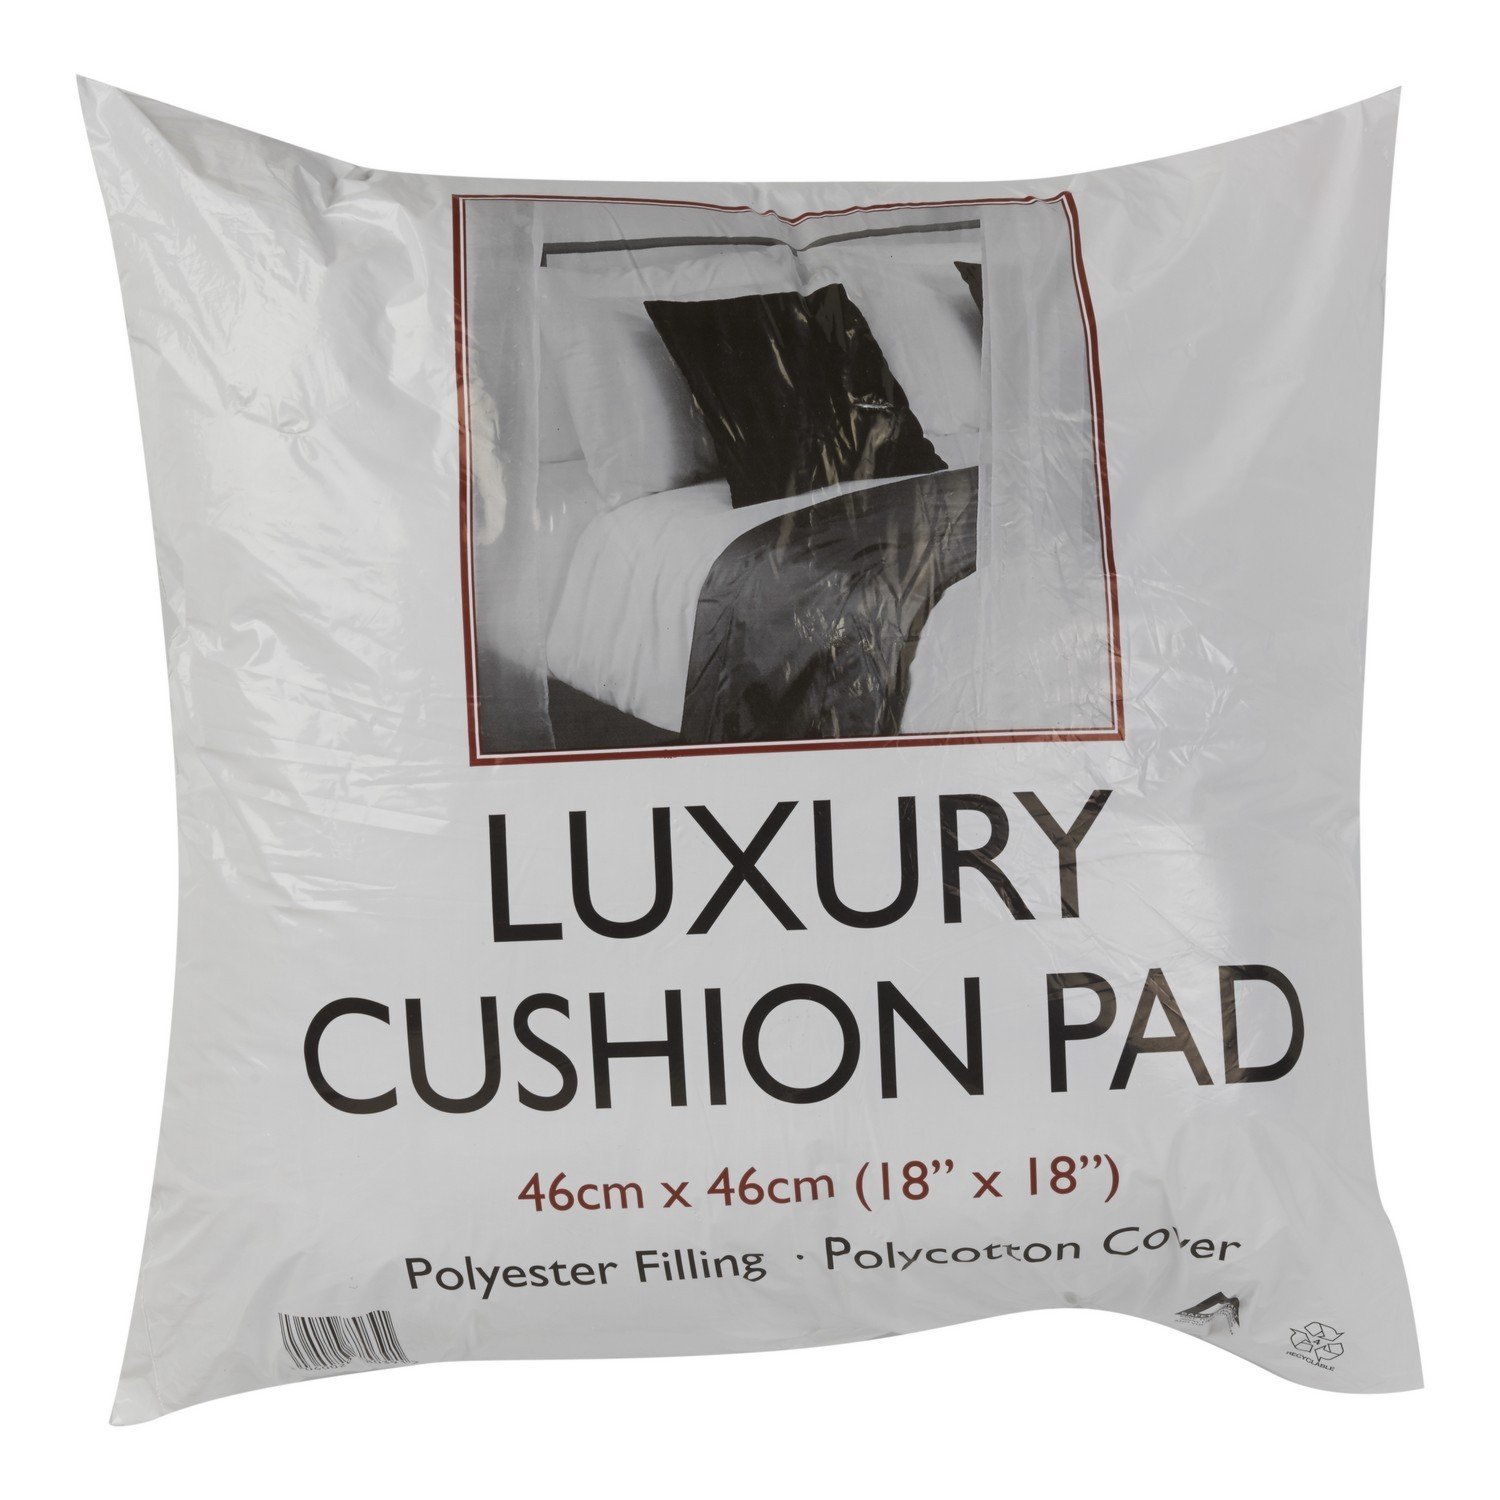 White Luxury Cushion Pad 46 x 46cm Image